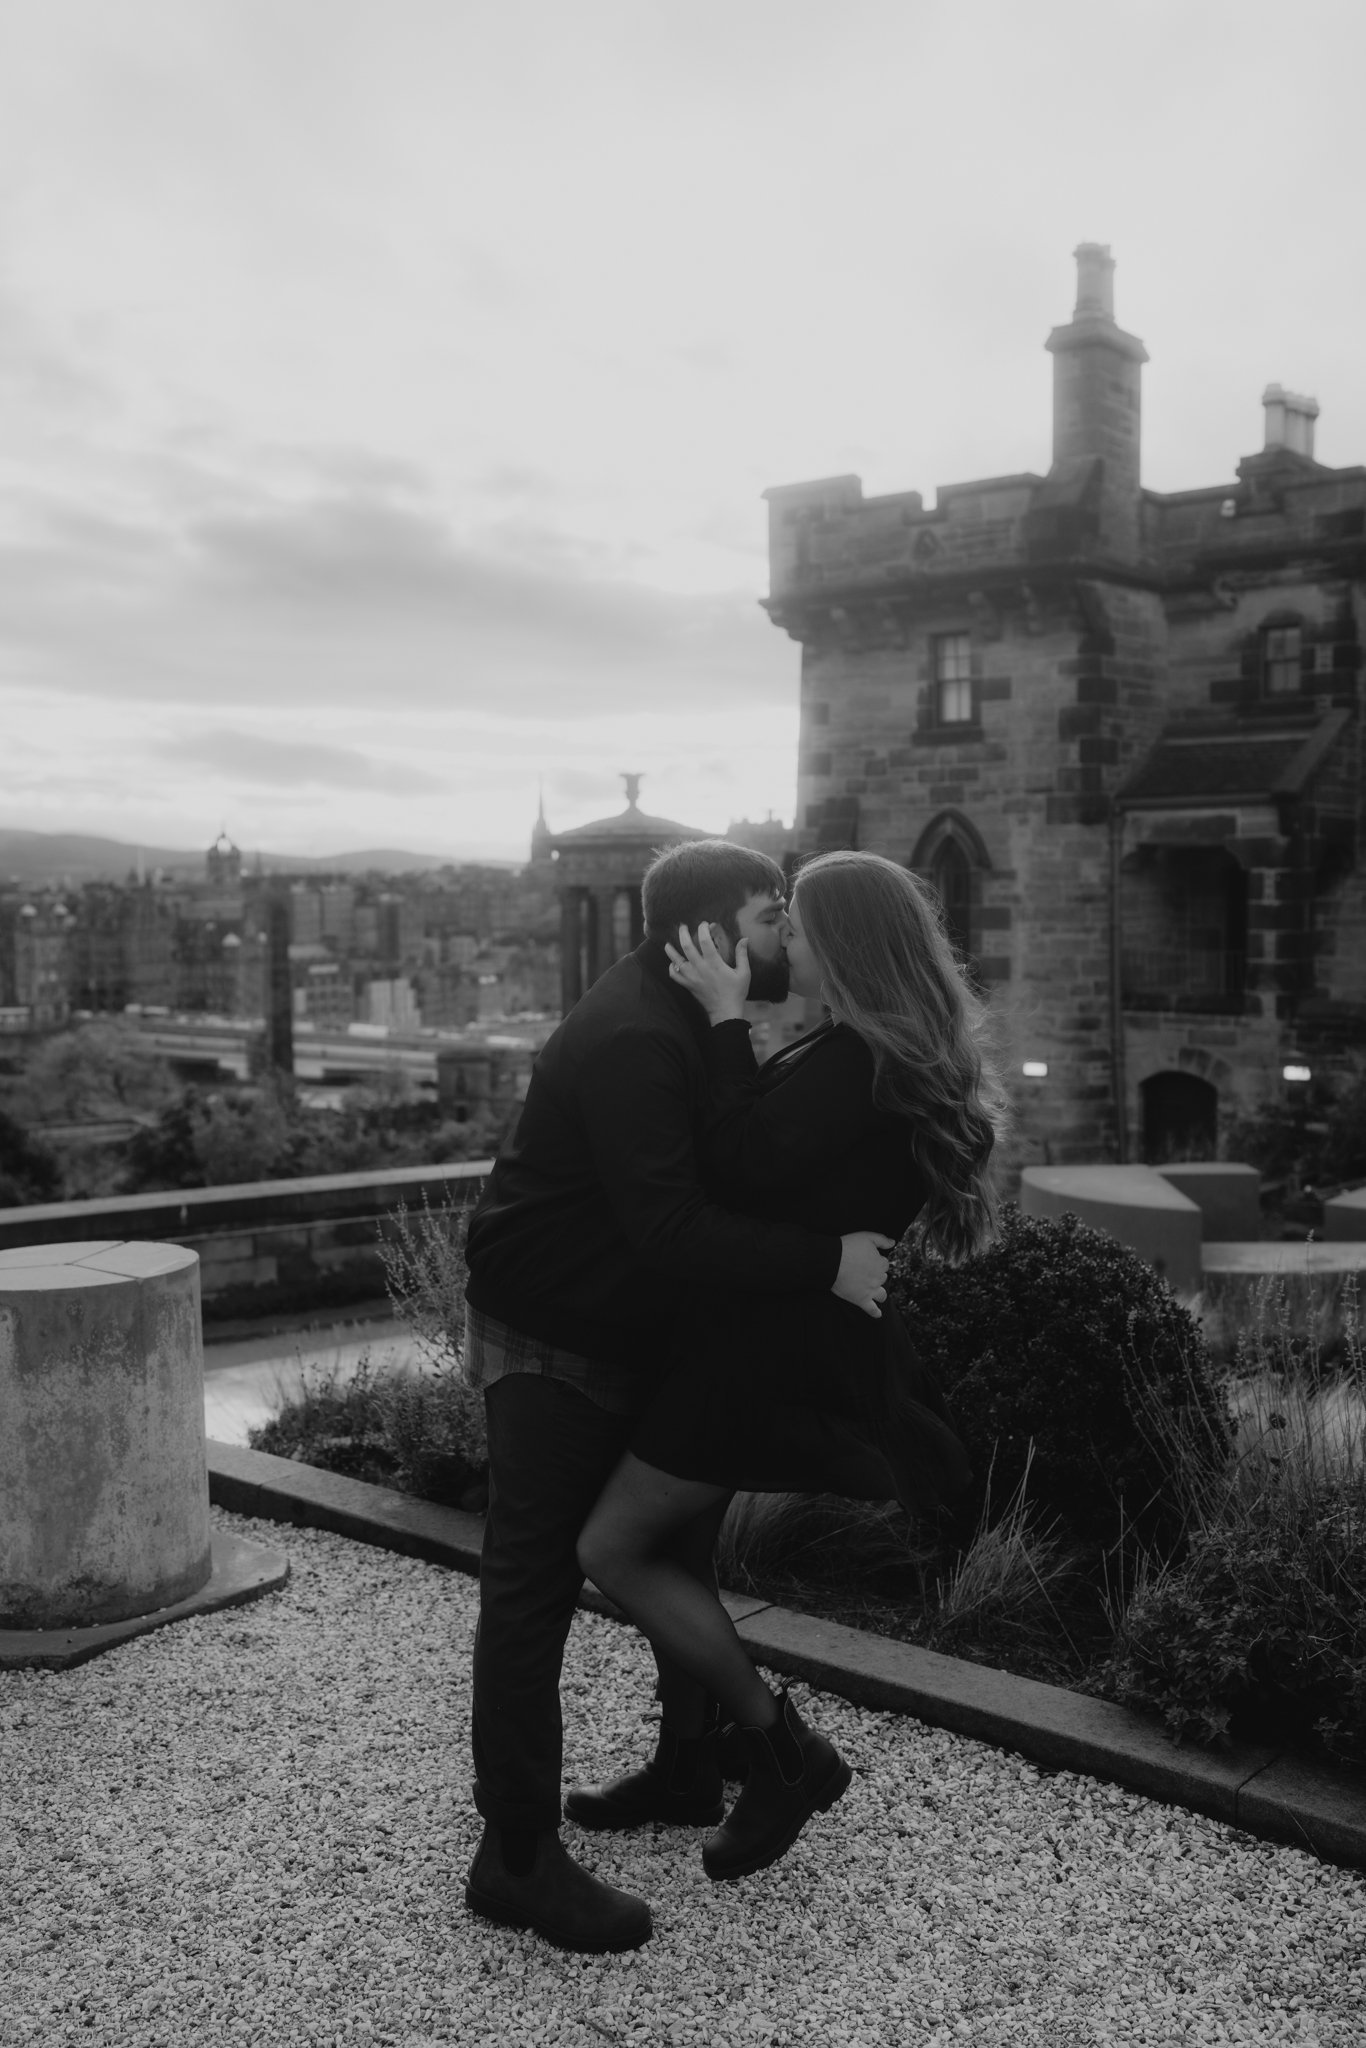  A sweet Calton Hill Edinburgh marriage proposal | Edinburgh marriage proposal photographer 